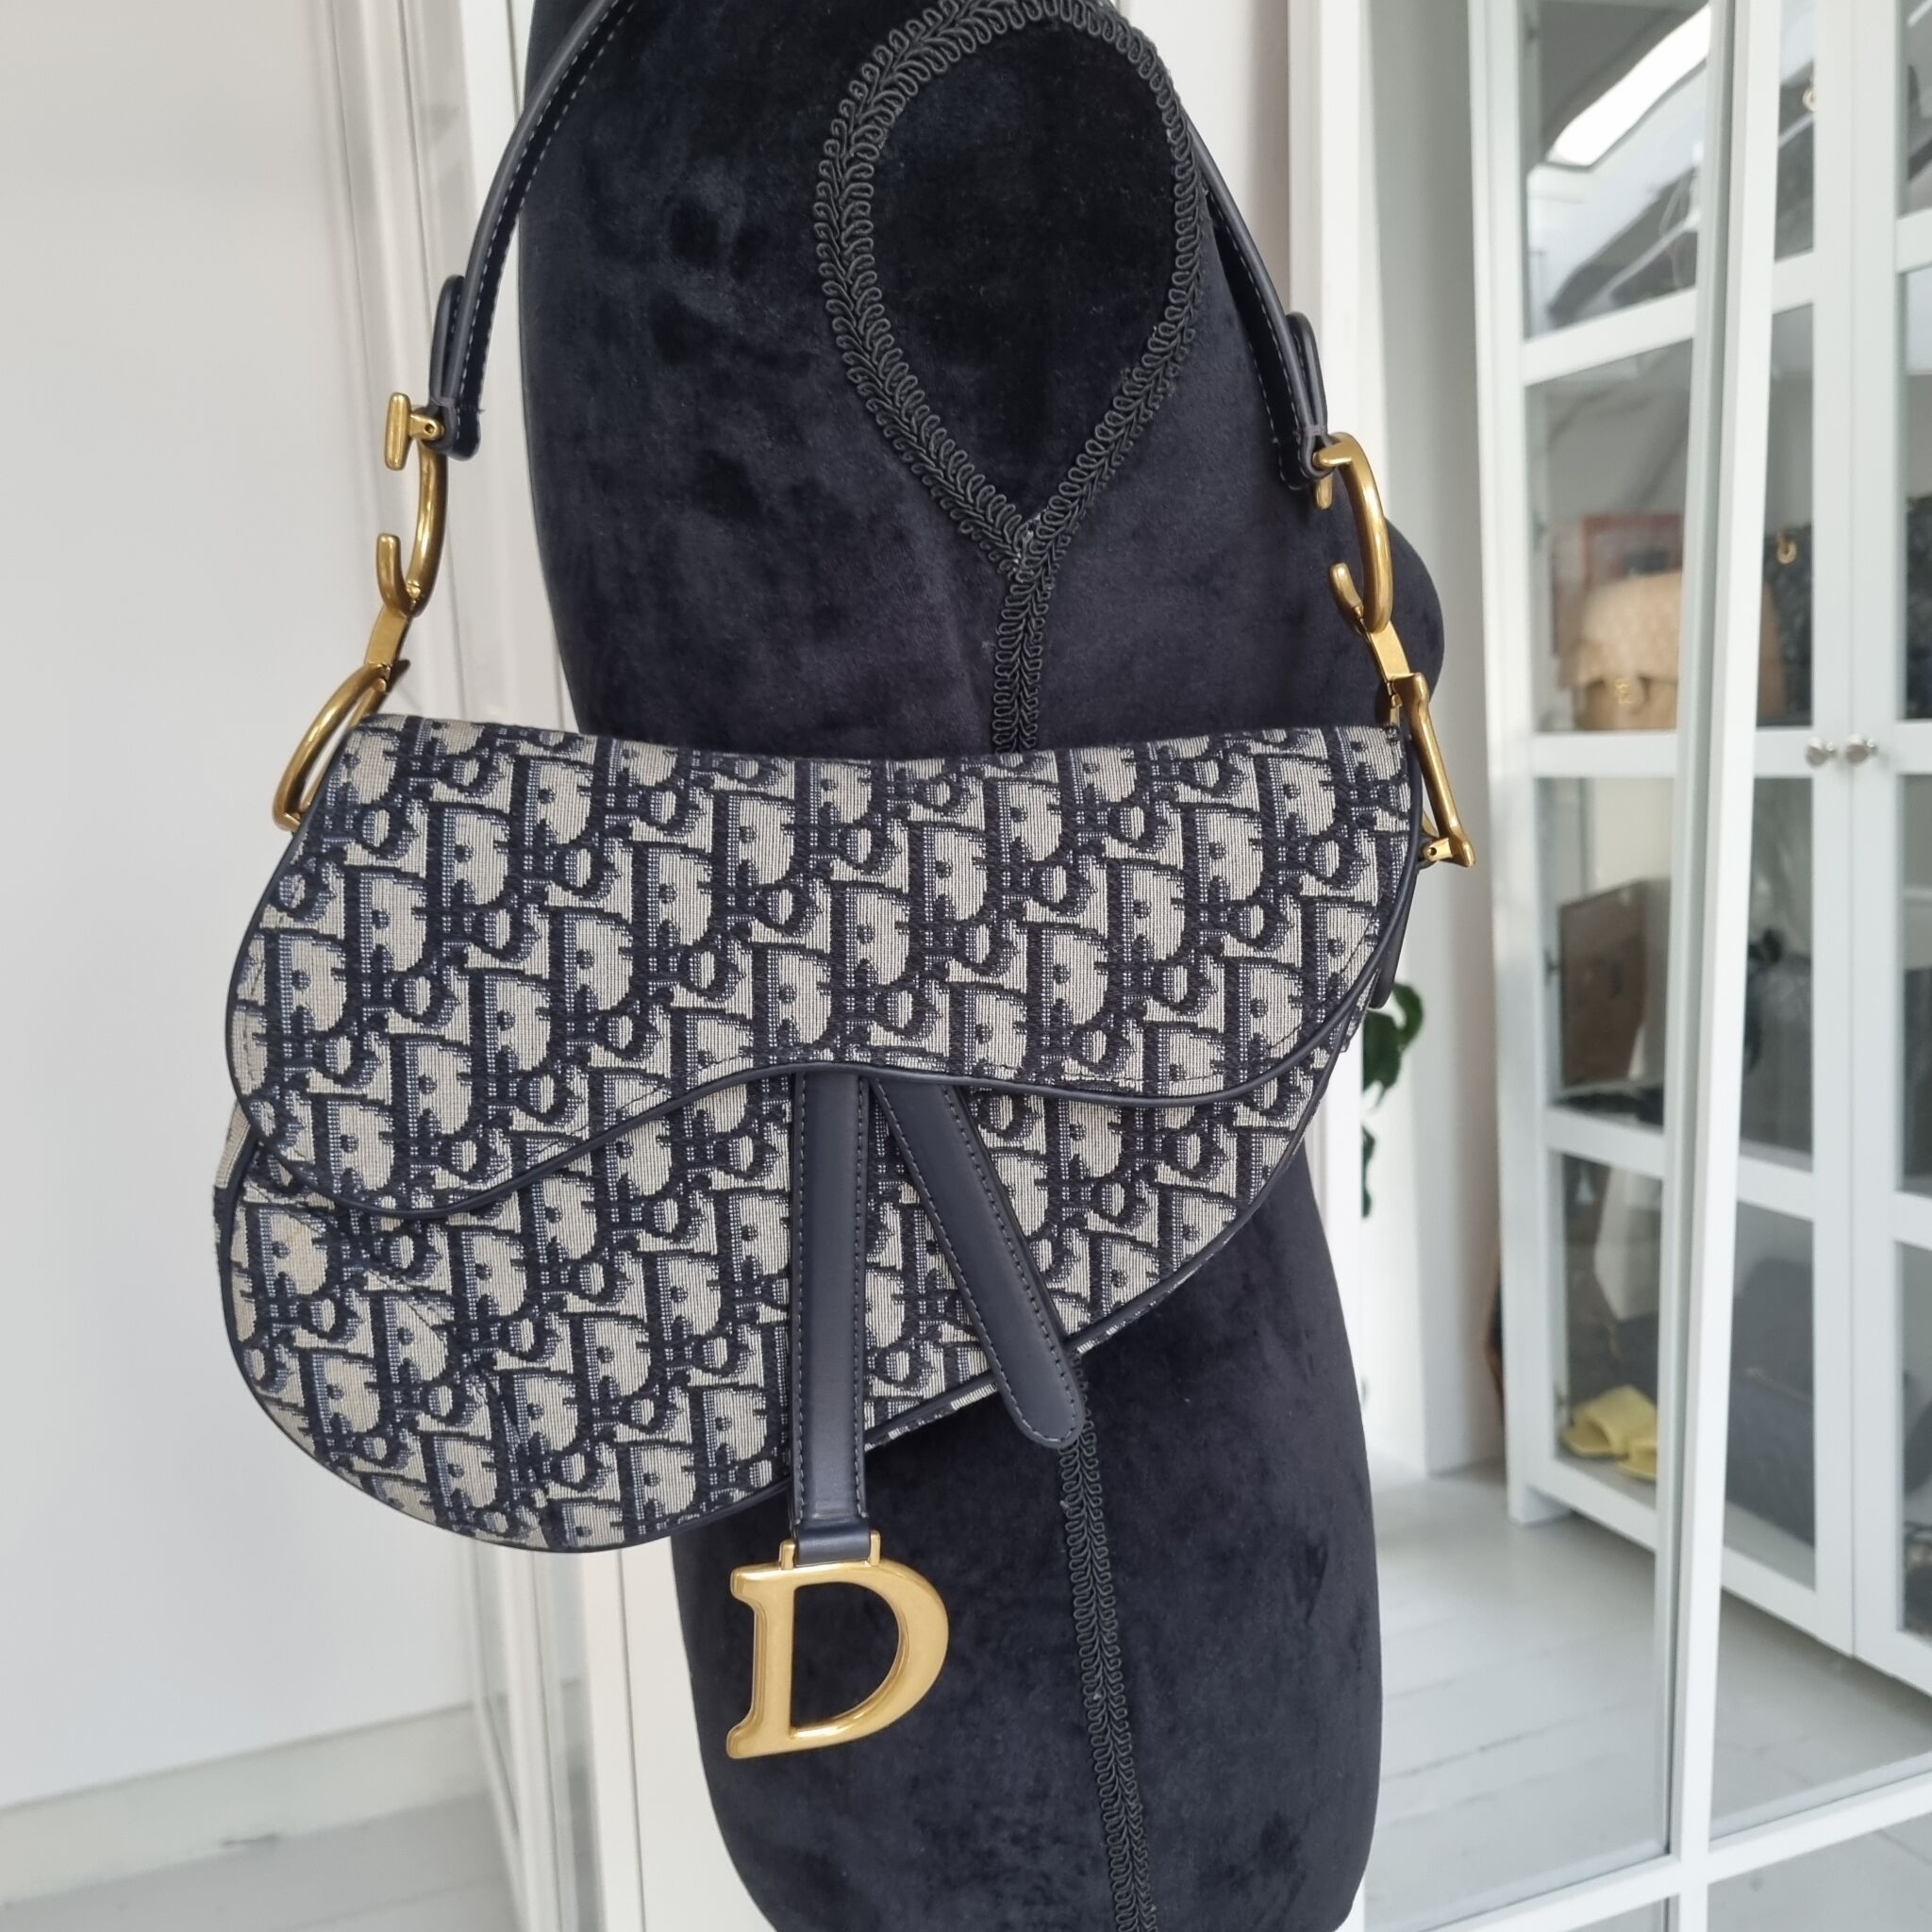 Dior Saddle Bag Black  Nice Bag